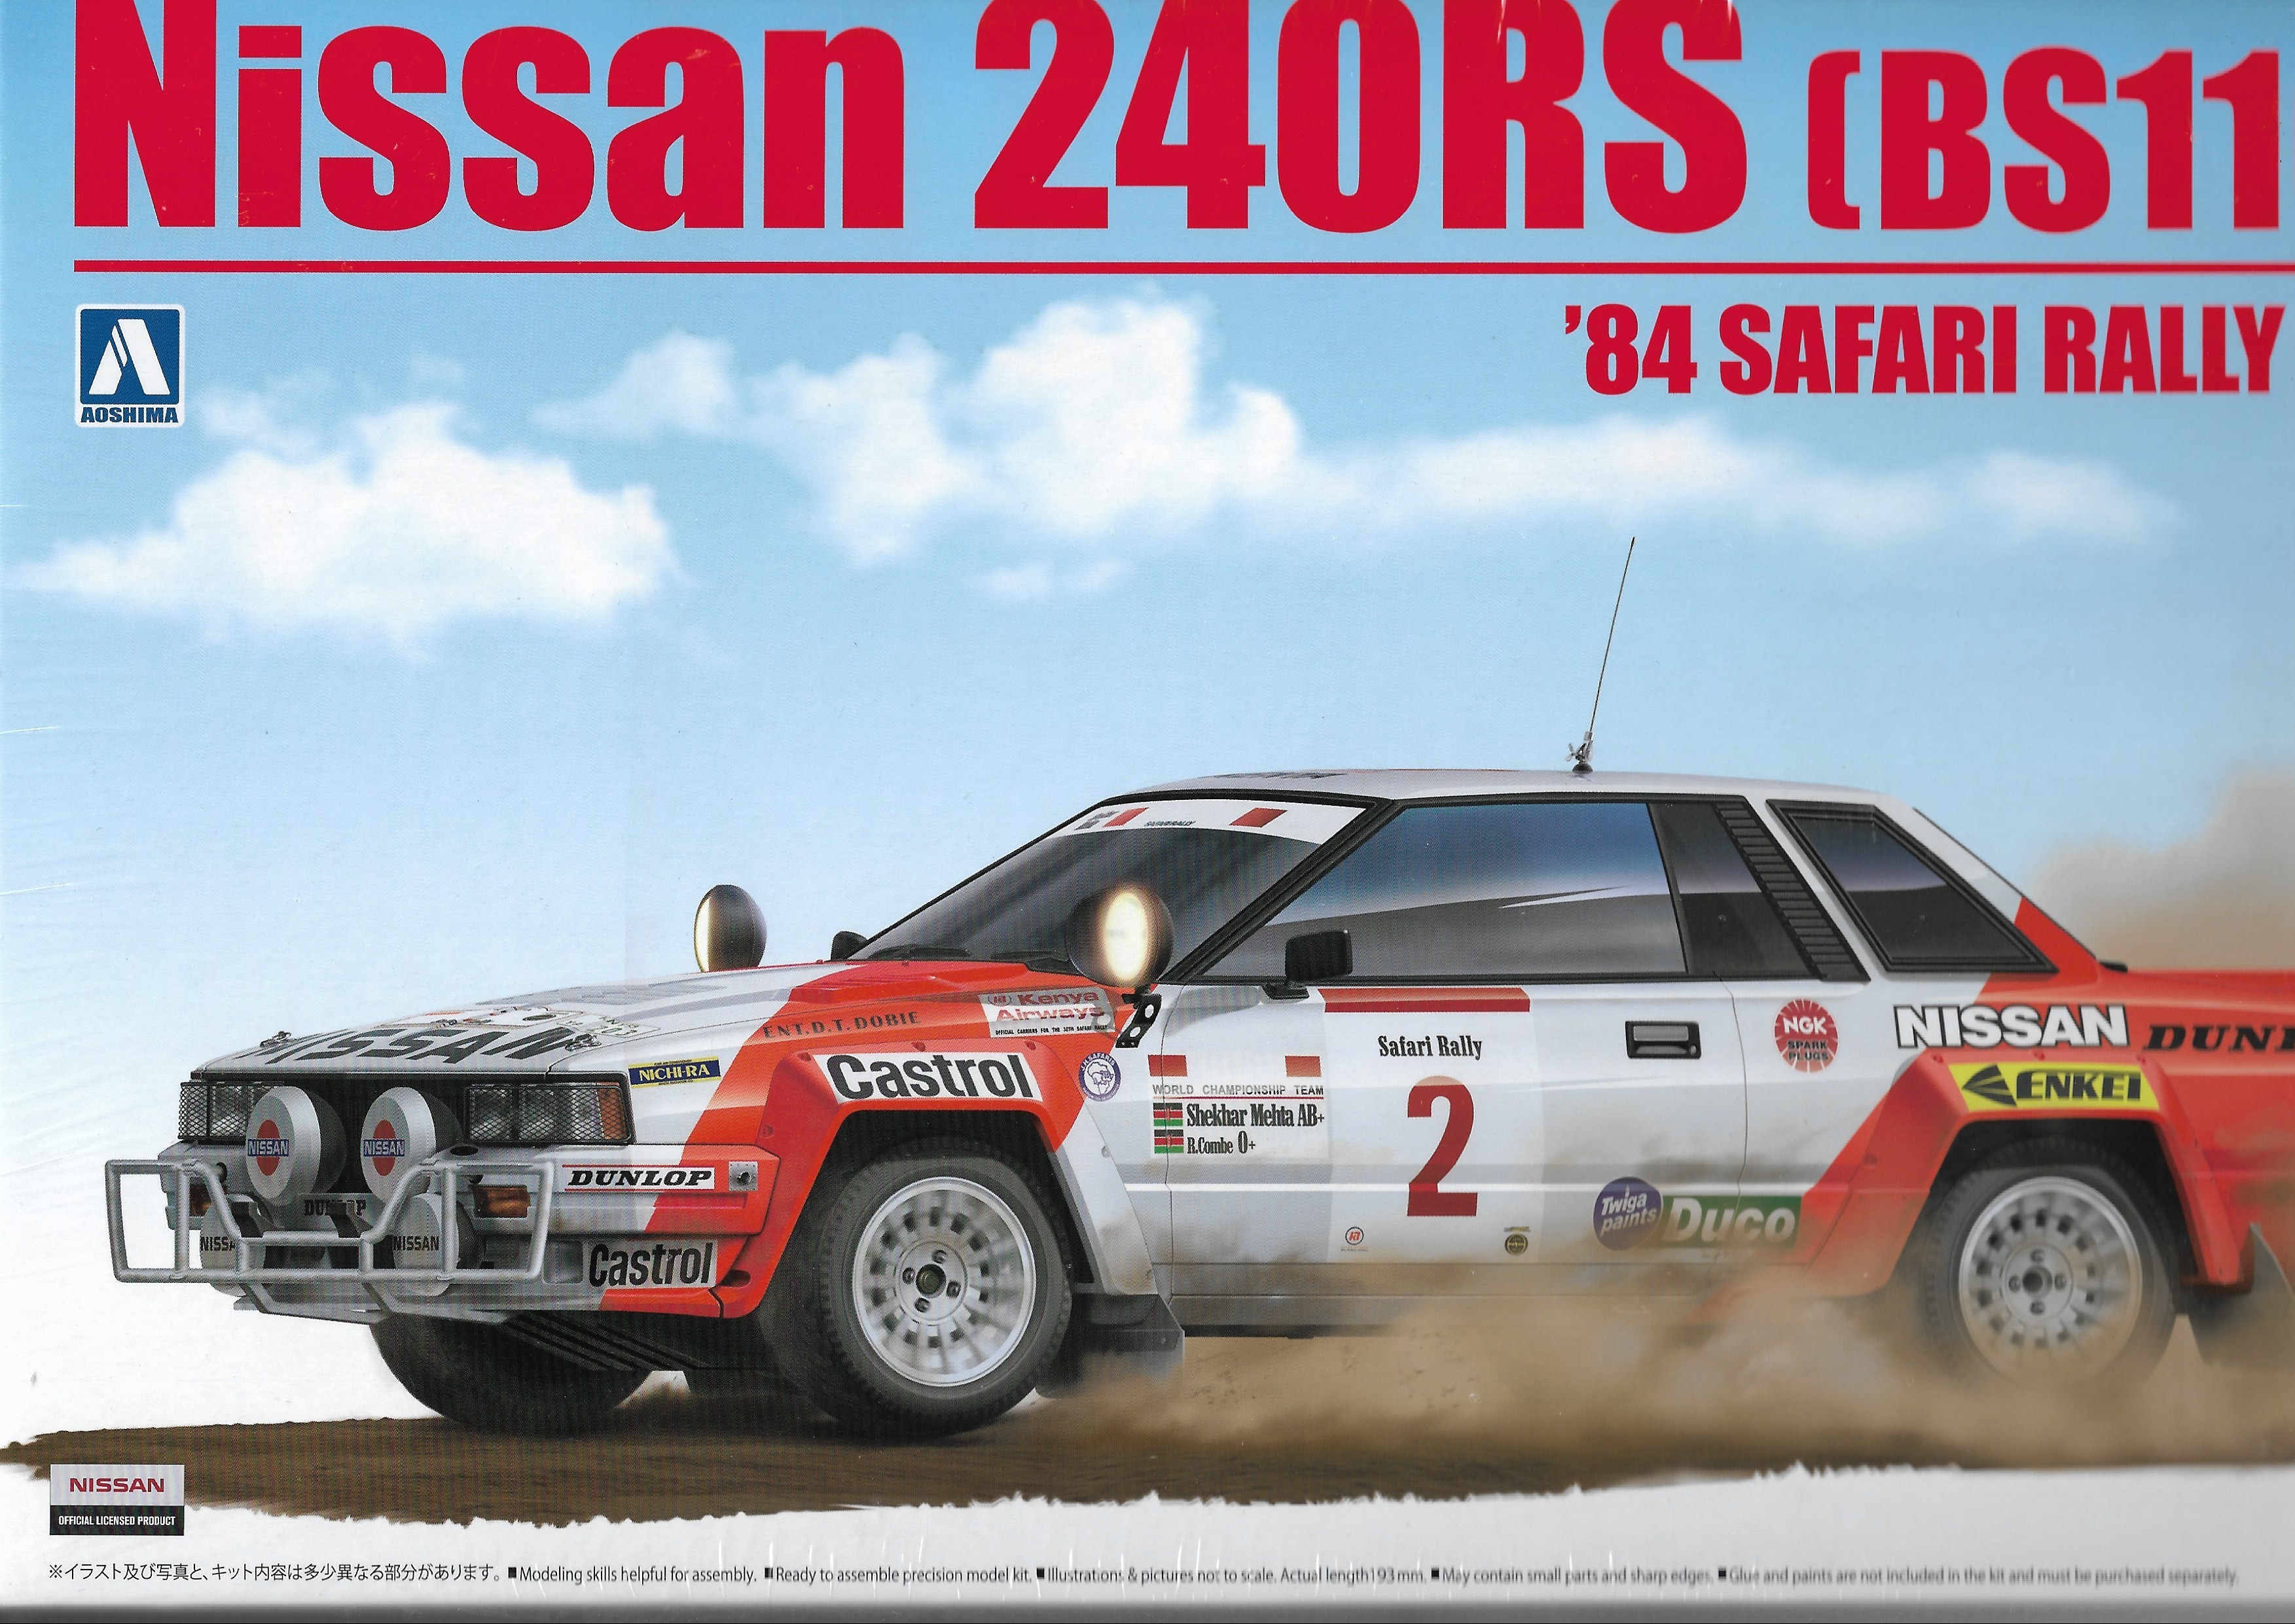 NISSAN 240RS SAFARI RALLY 1984 BEEMAX 1/24